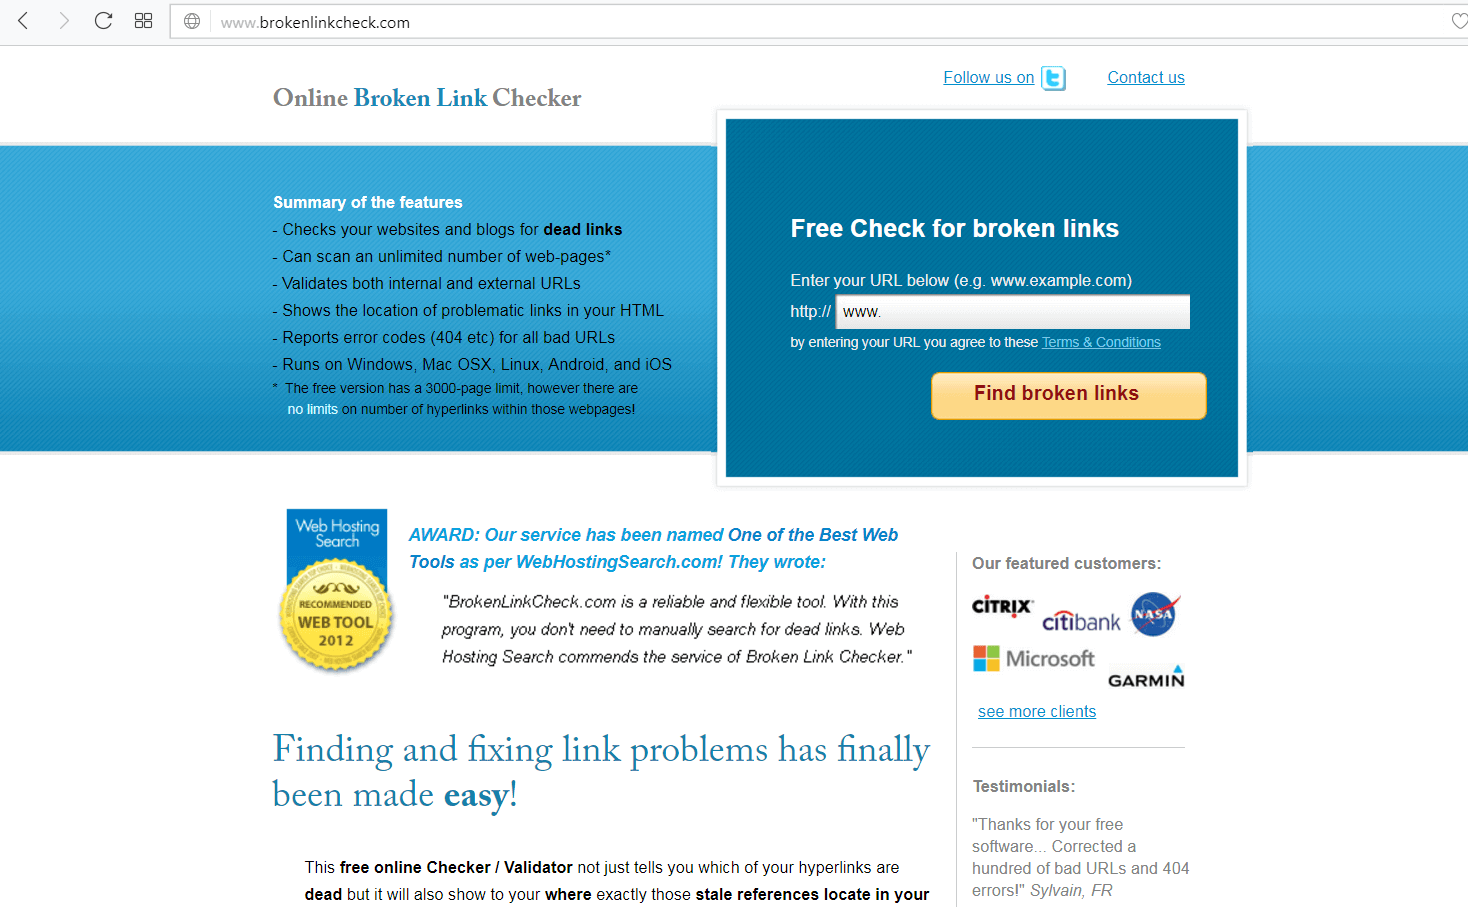 screen print of brokenlinkcheck.com's website